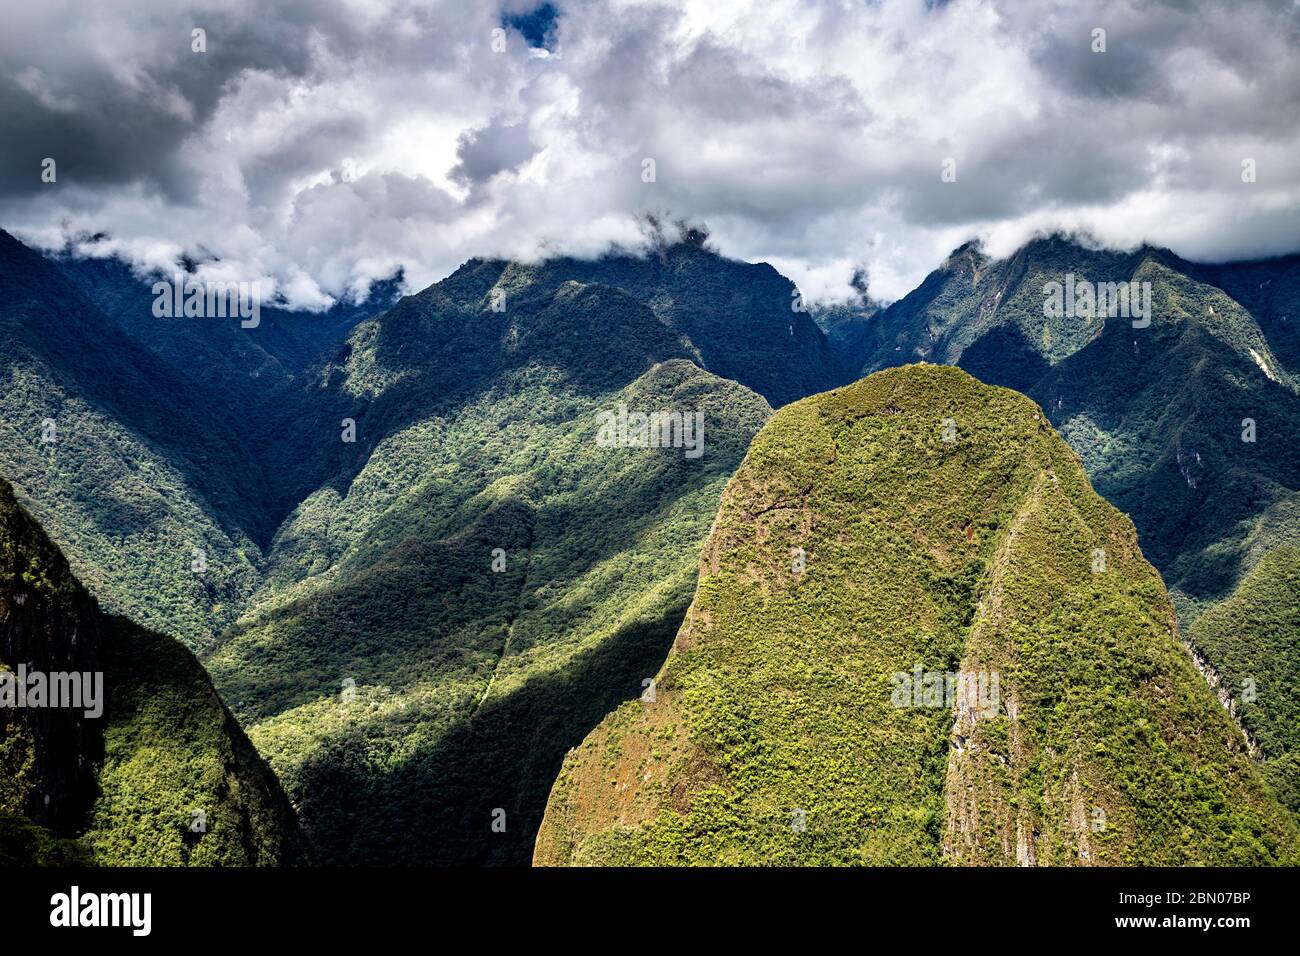 Nubes ominosas y exuberantes montañas verdes que rodean la antigua ciudad inca de Machu Picchu, Valle Sagrado, Perú Foto de stock